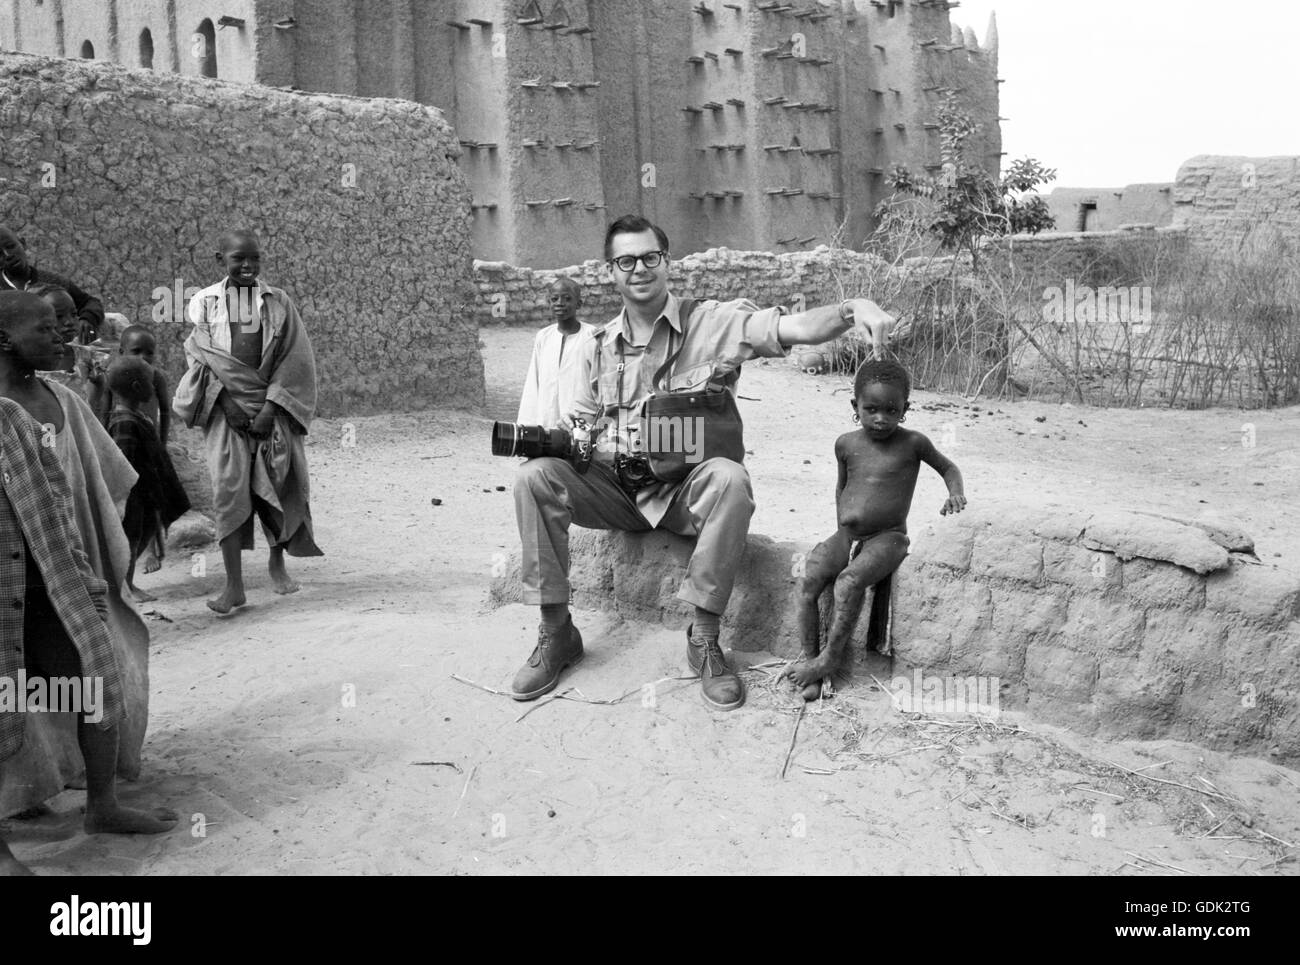 Fotografo Phillip Harrington interagendo con gli abitanti di un villaggio presso la Grande Moschea di Djenne, 1959 Foto Stock